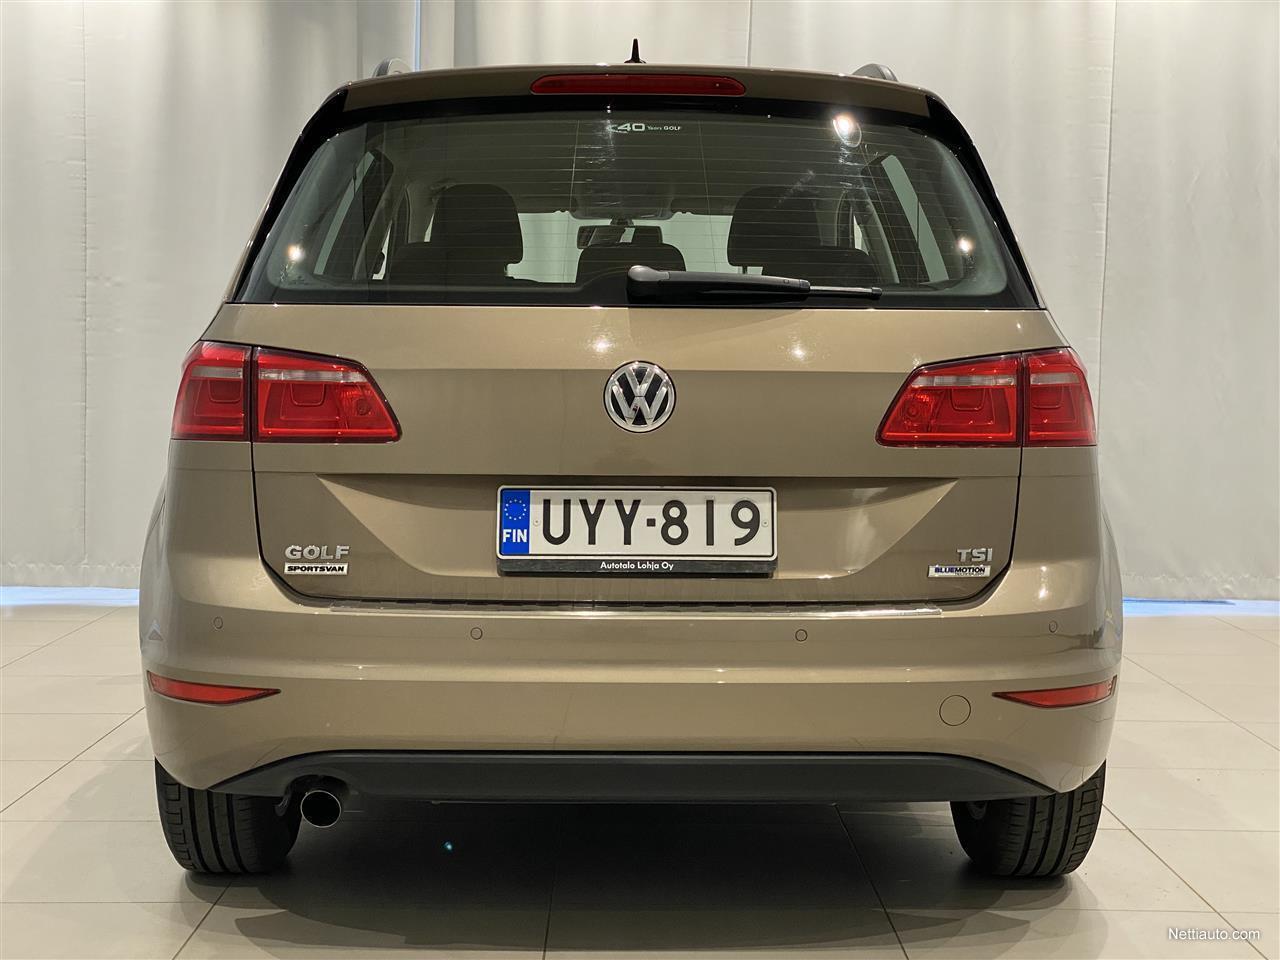 Volkswagen Golf Sportsvan Comfortline 1,2 TSI 81 kW (110 hv) DSG-automaatti, Webasto kaukosäädöllä, Tutkat